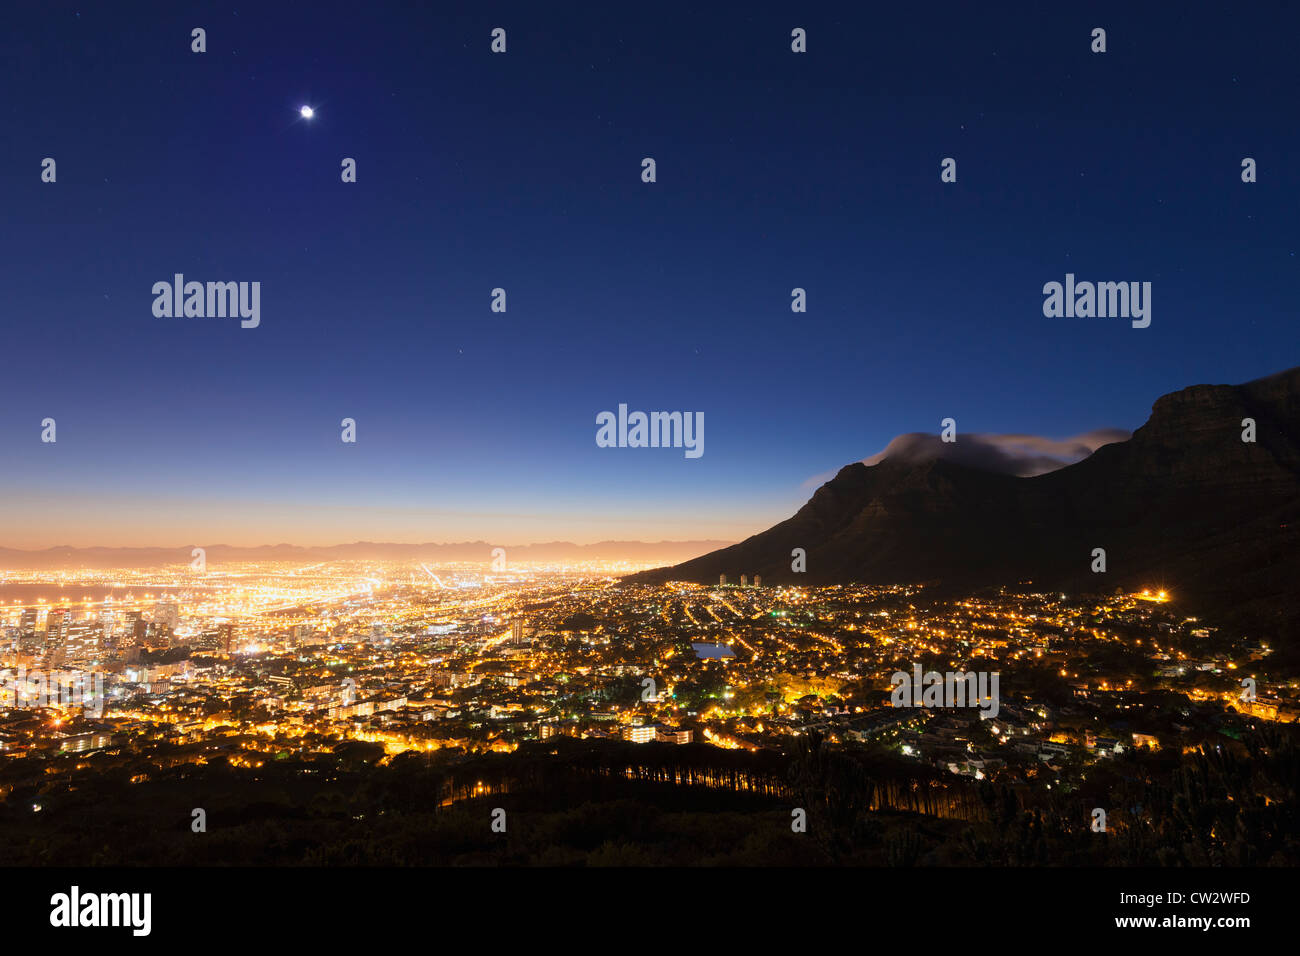 Centre-ville du Cap au lever du soleil avec une vue sur la Montagne de la table. Cape Town Afrique du Sud. Banque D'Images